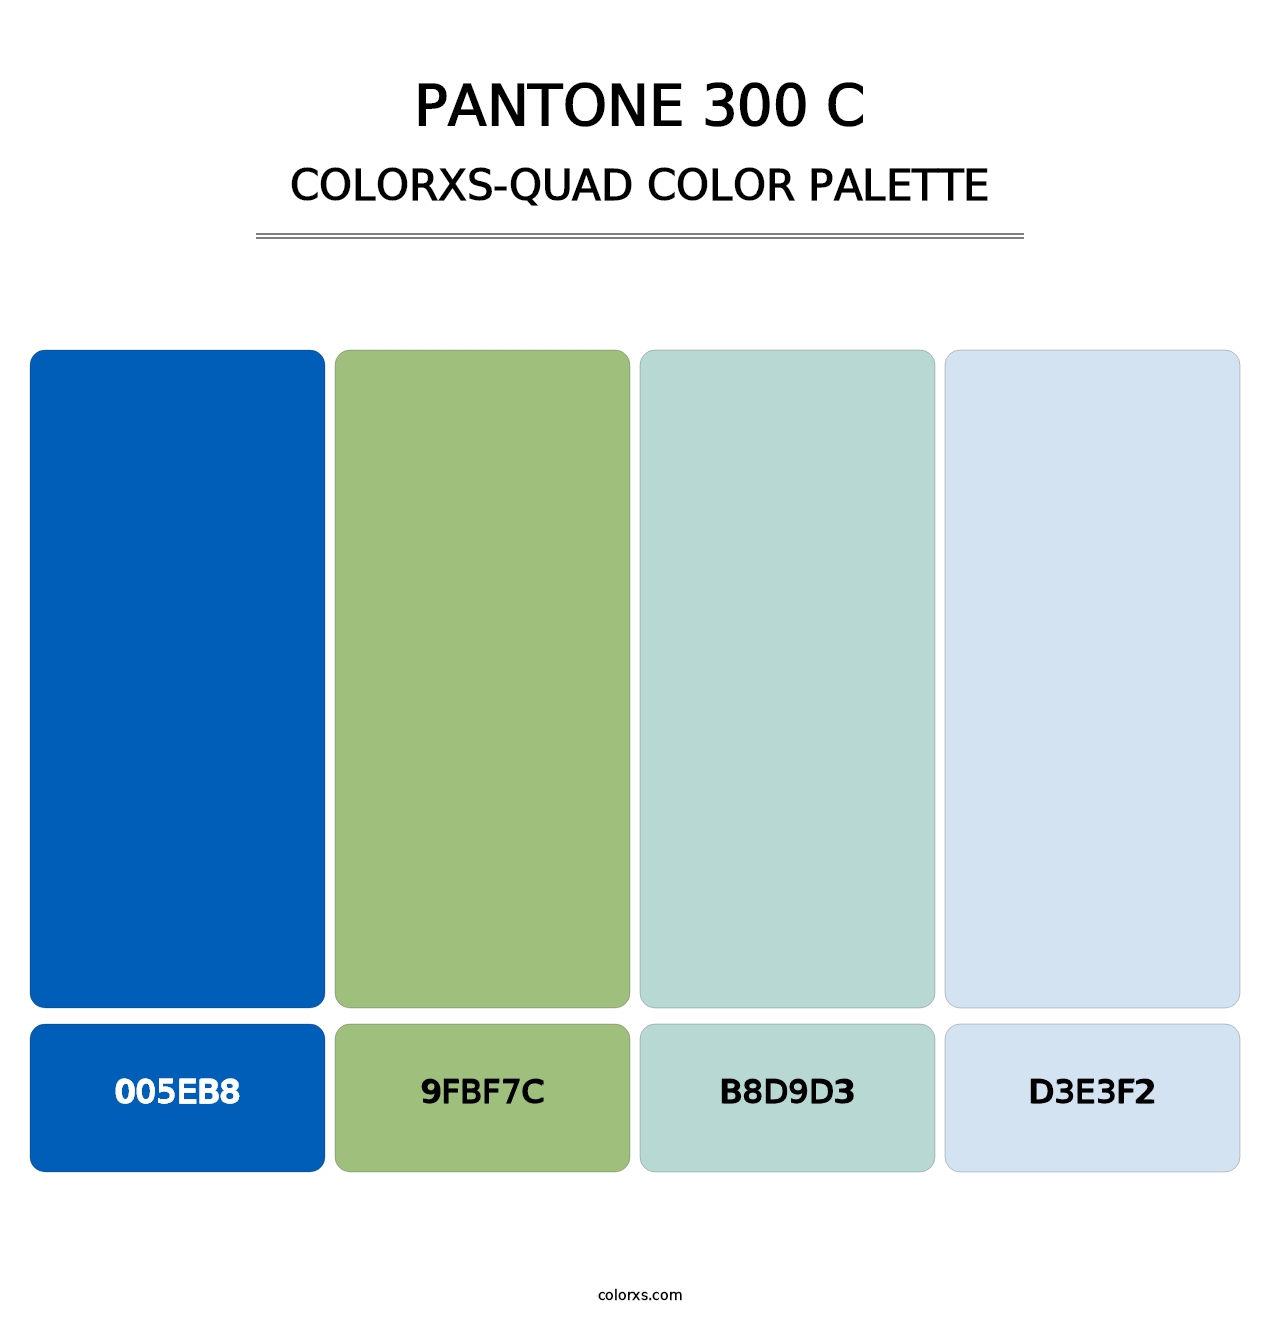 PANTONE 300 C - Colorxs Quad Palette